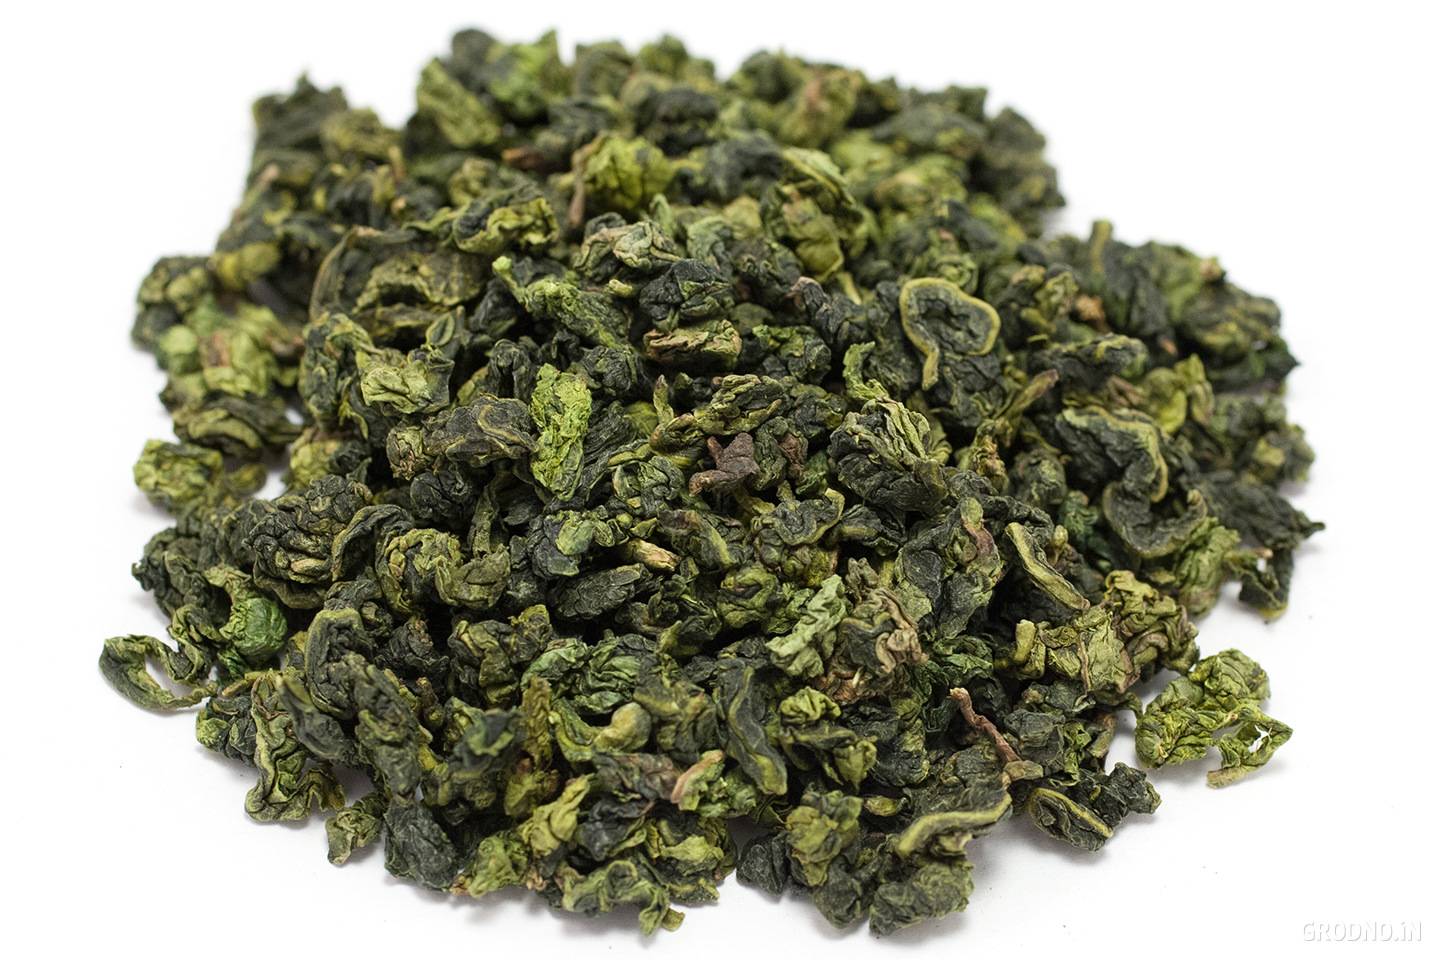 Зеленый чай молочный улун (оолонг), его польза и вред – все о полезных свойствах чая